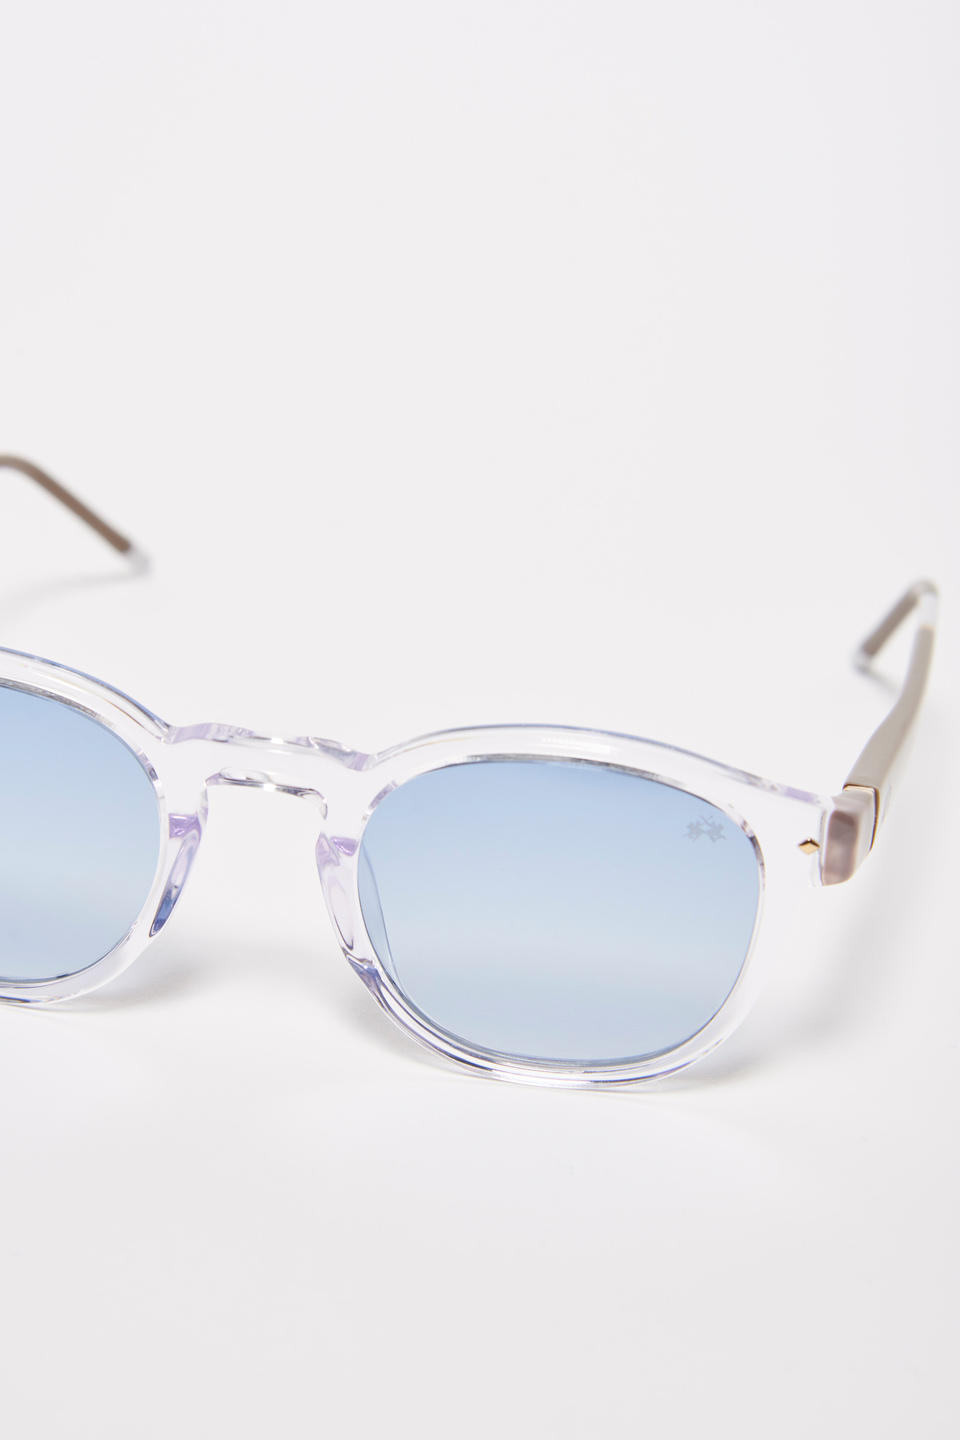 Drop model men's sunglasses | La Martina - Official Online Shop